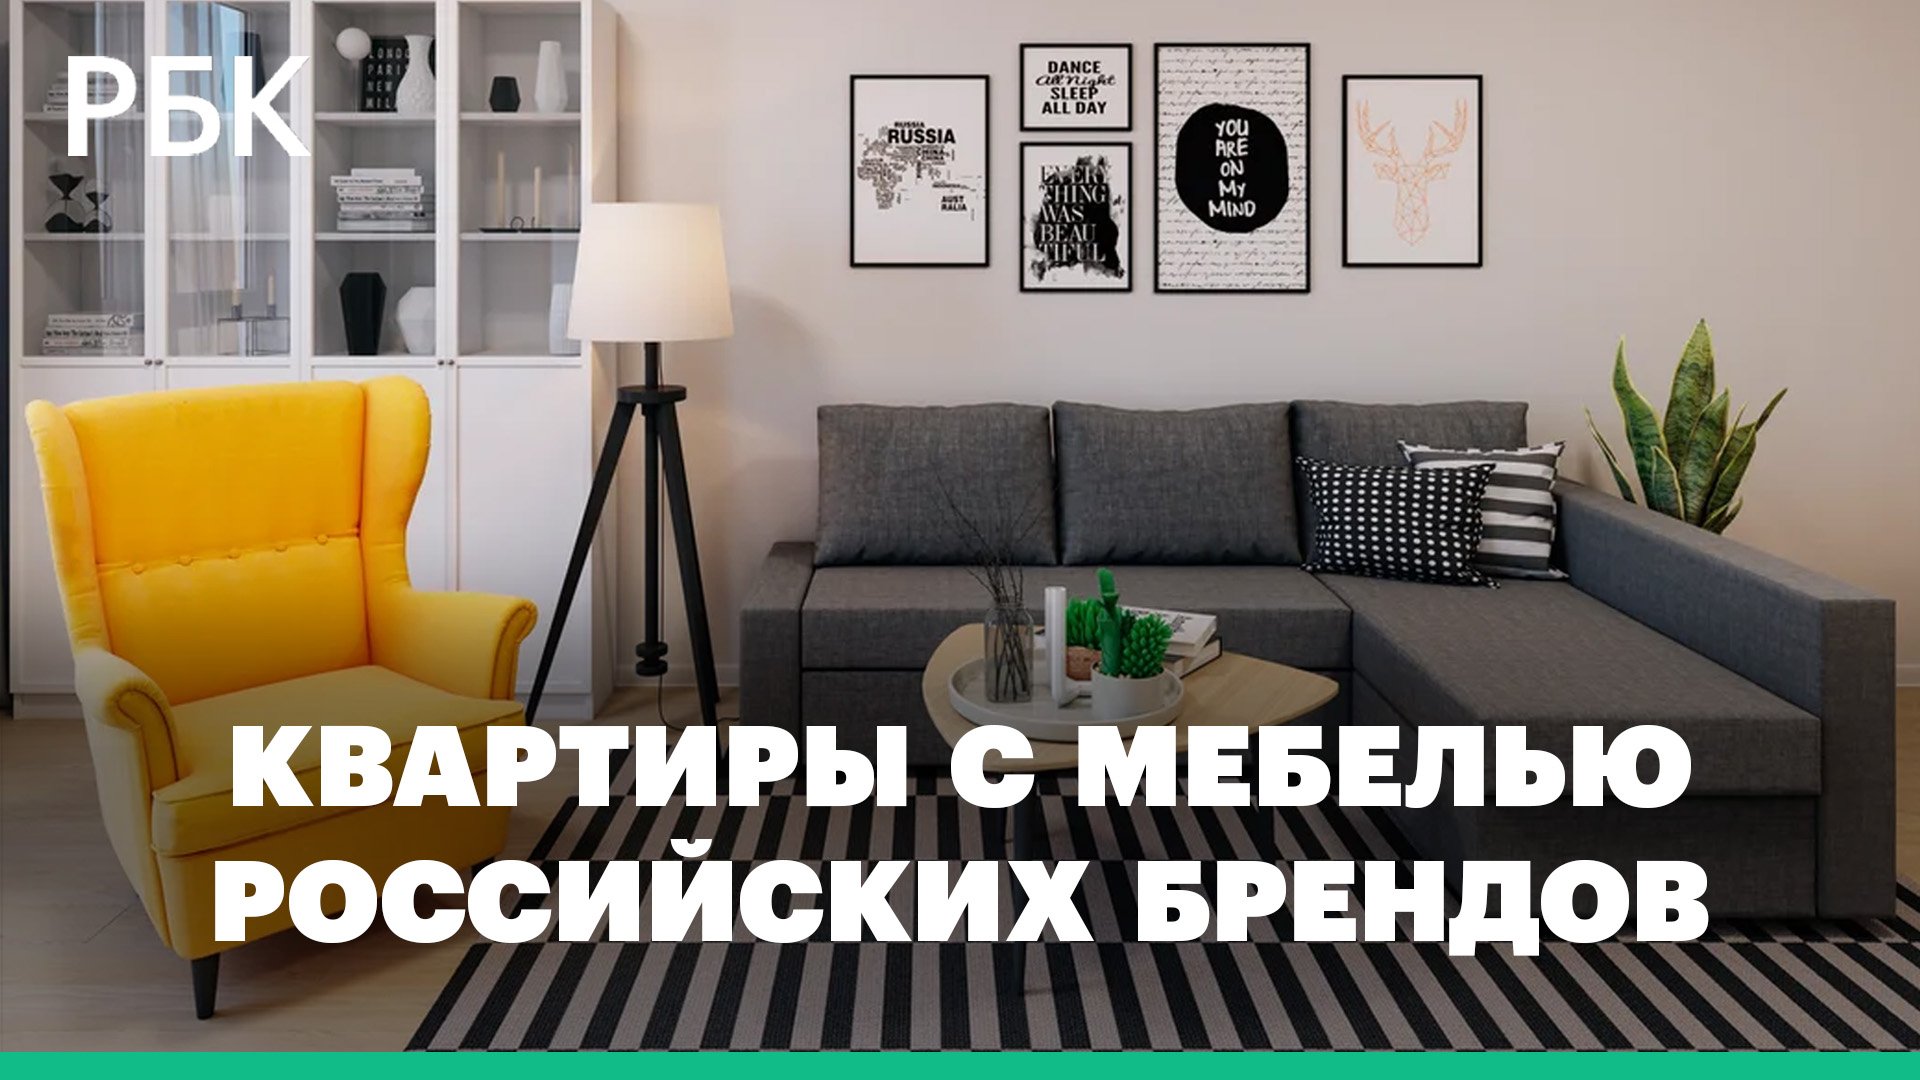 Застройщики начали полностью оснащать квартиры мебелью российских брендов